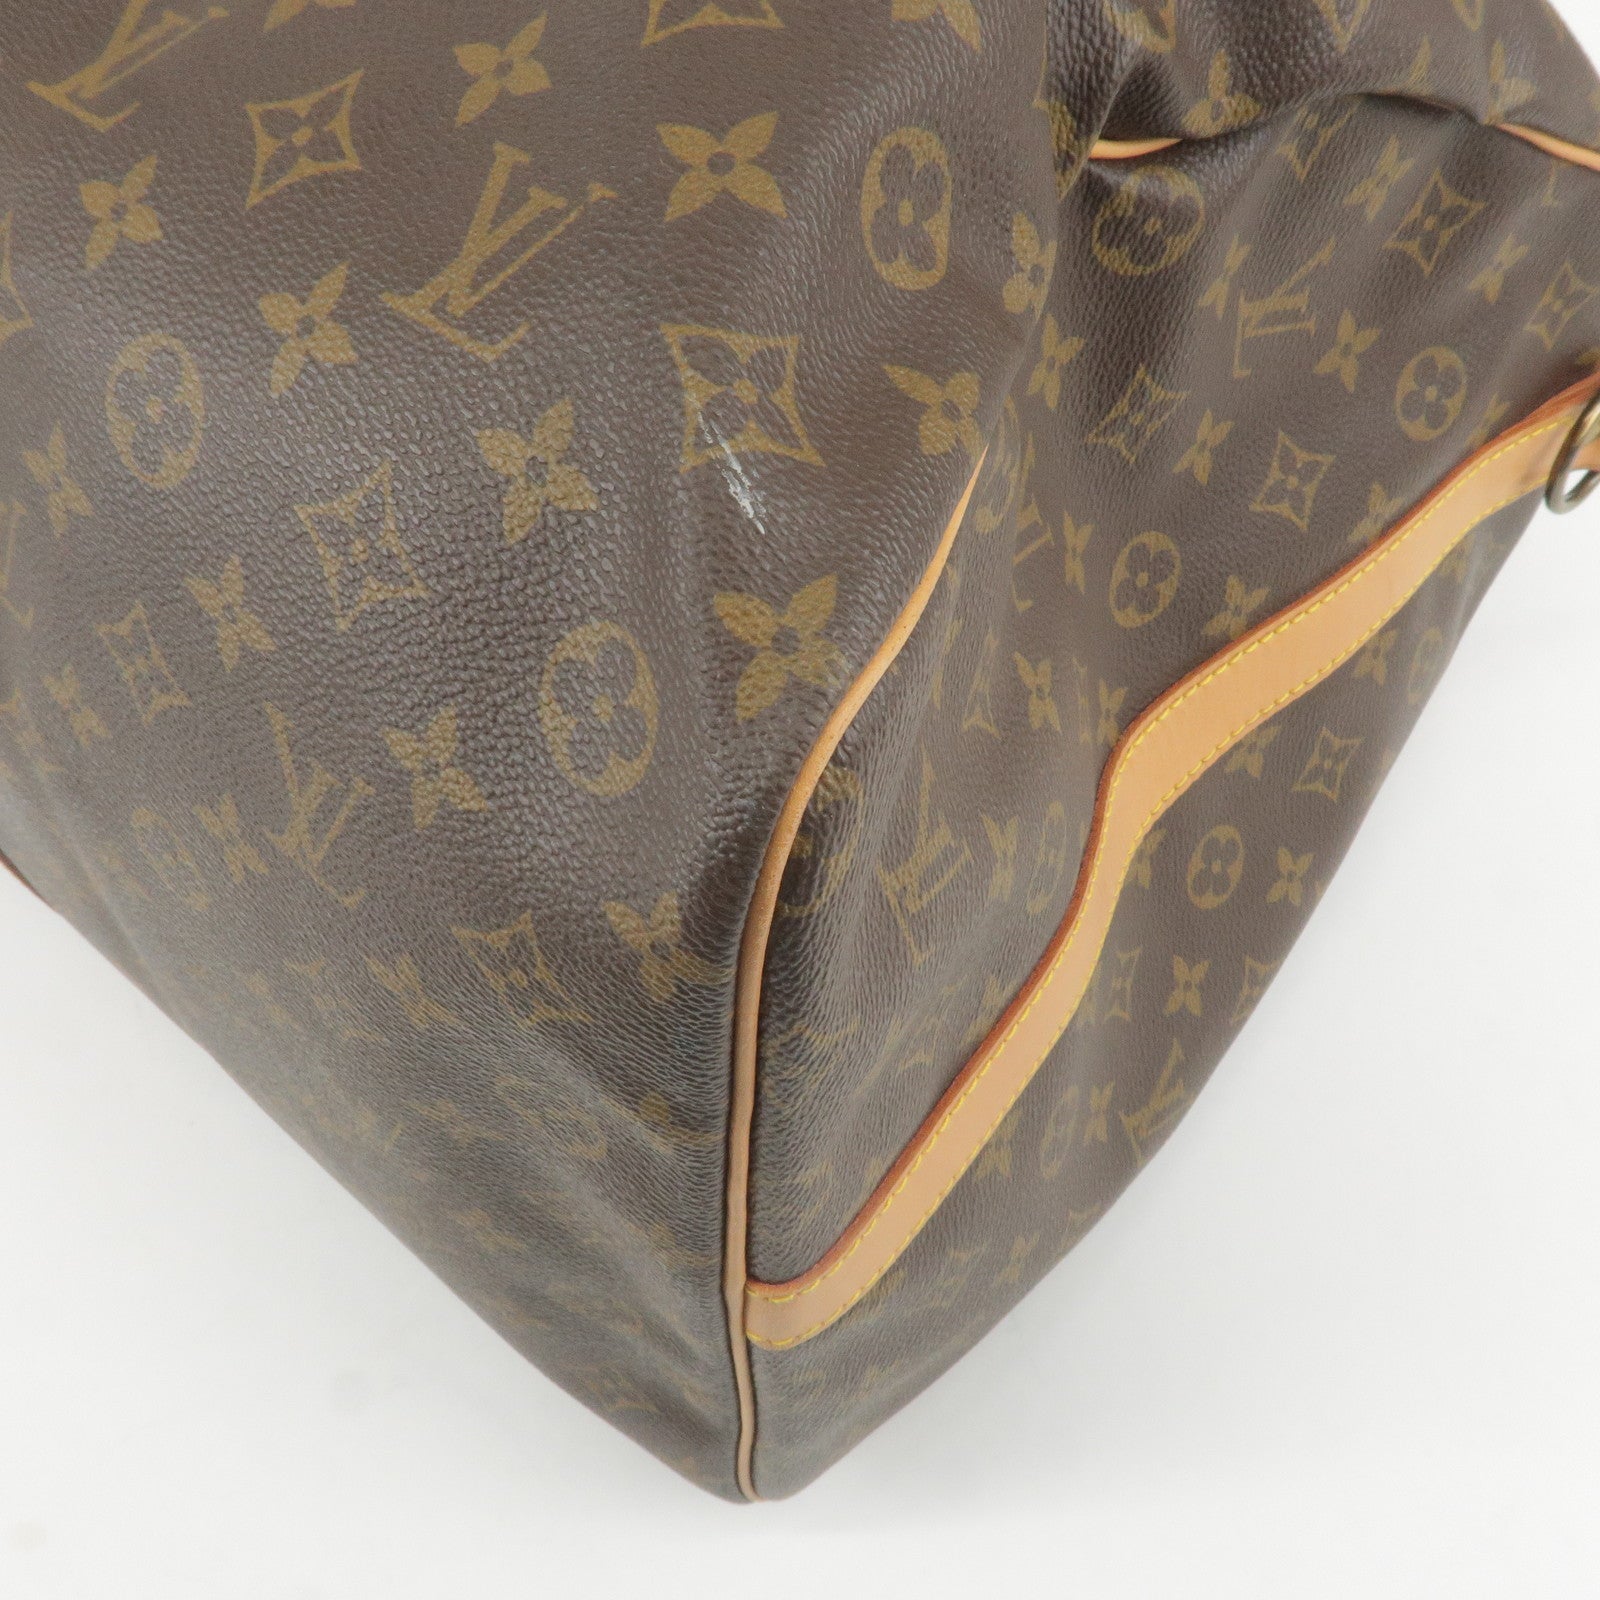 SOLD OUT—— Louis Vuitton Vintage Pochette Accessoires in Brown Epi